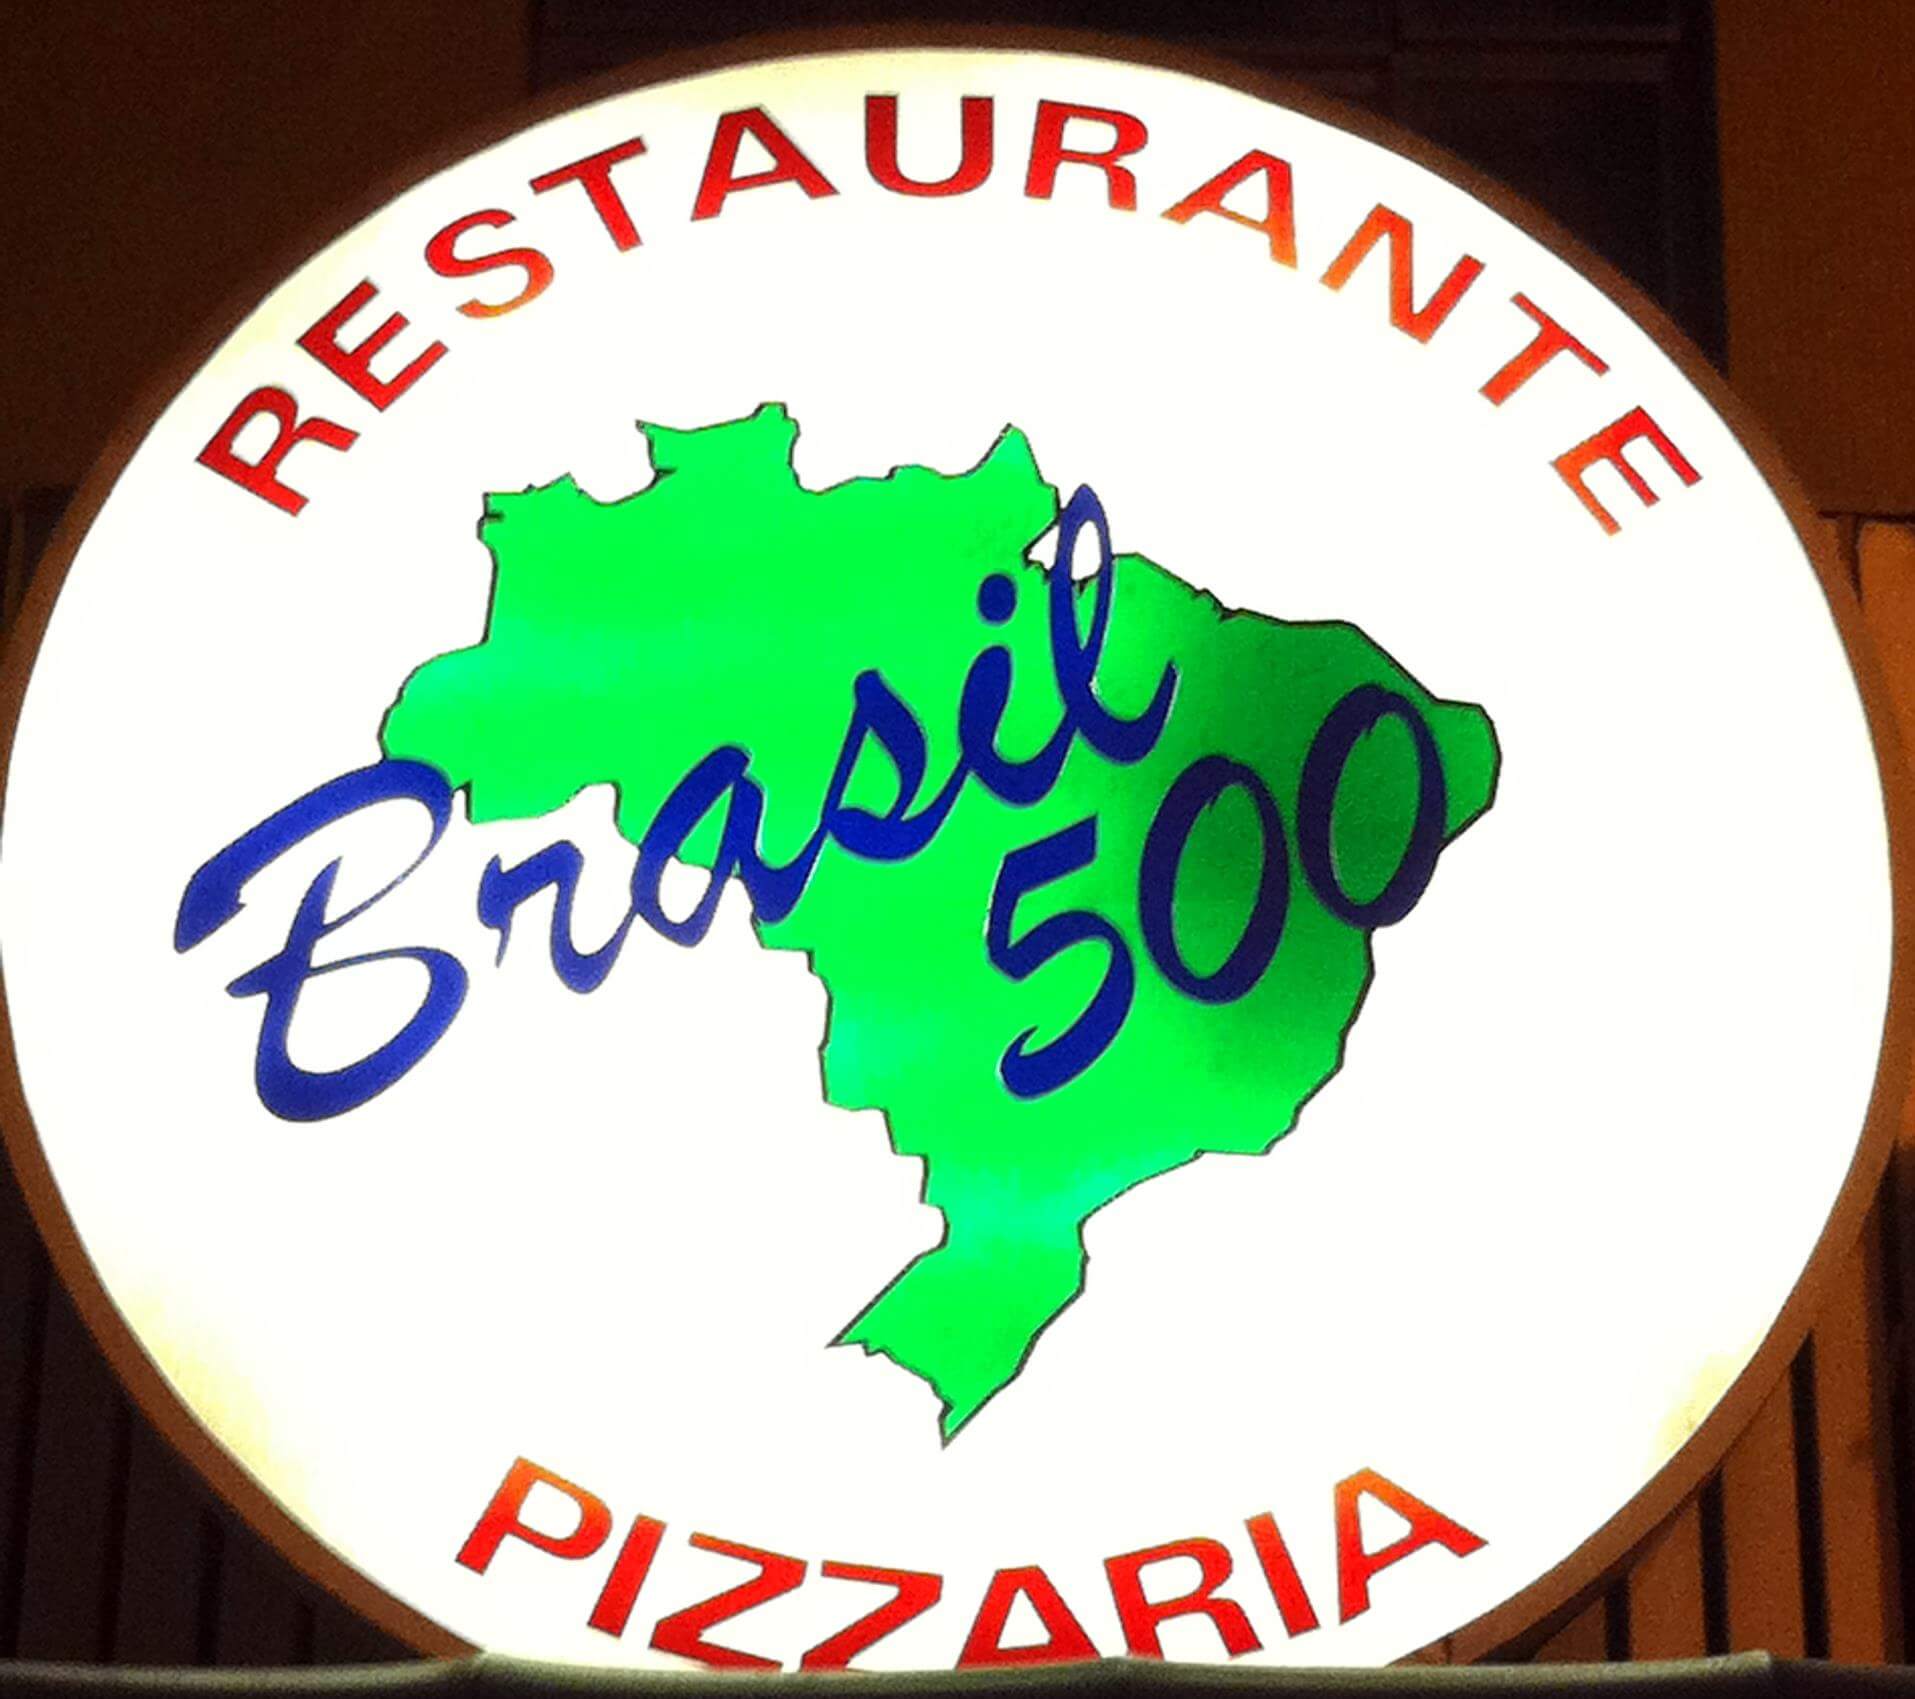 Restaurante Brasil 500